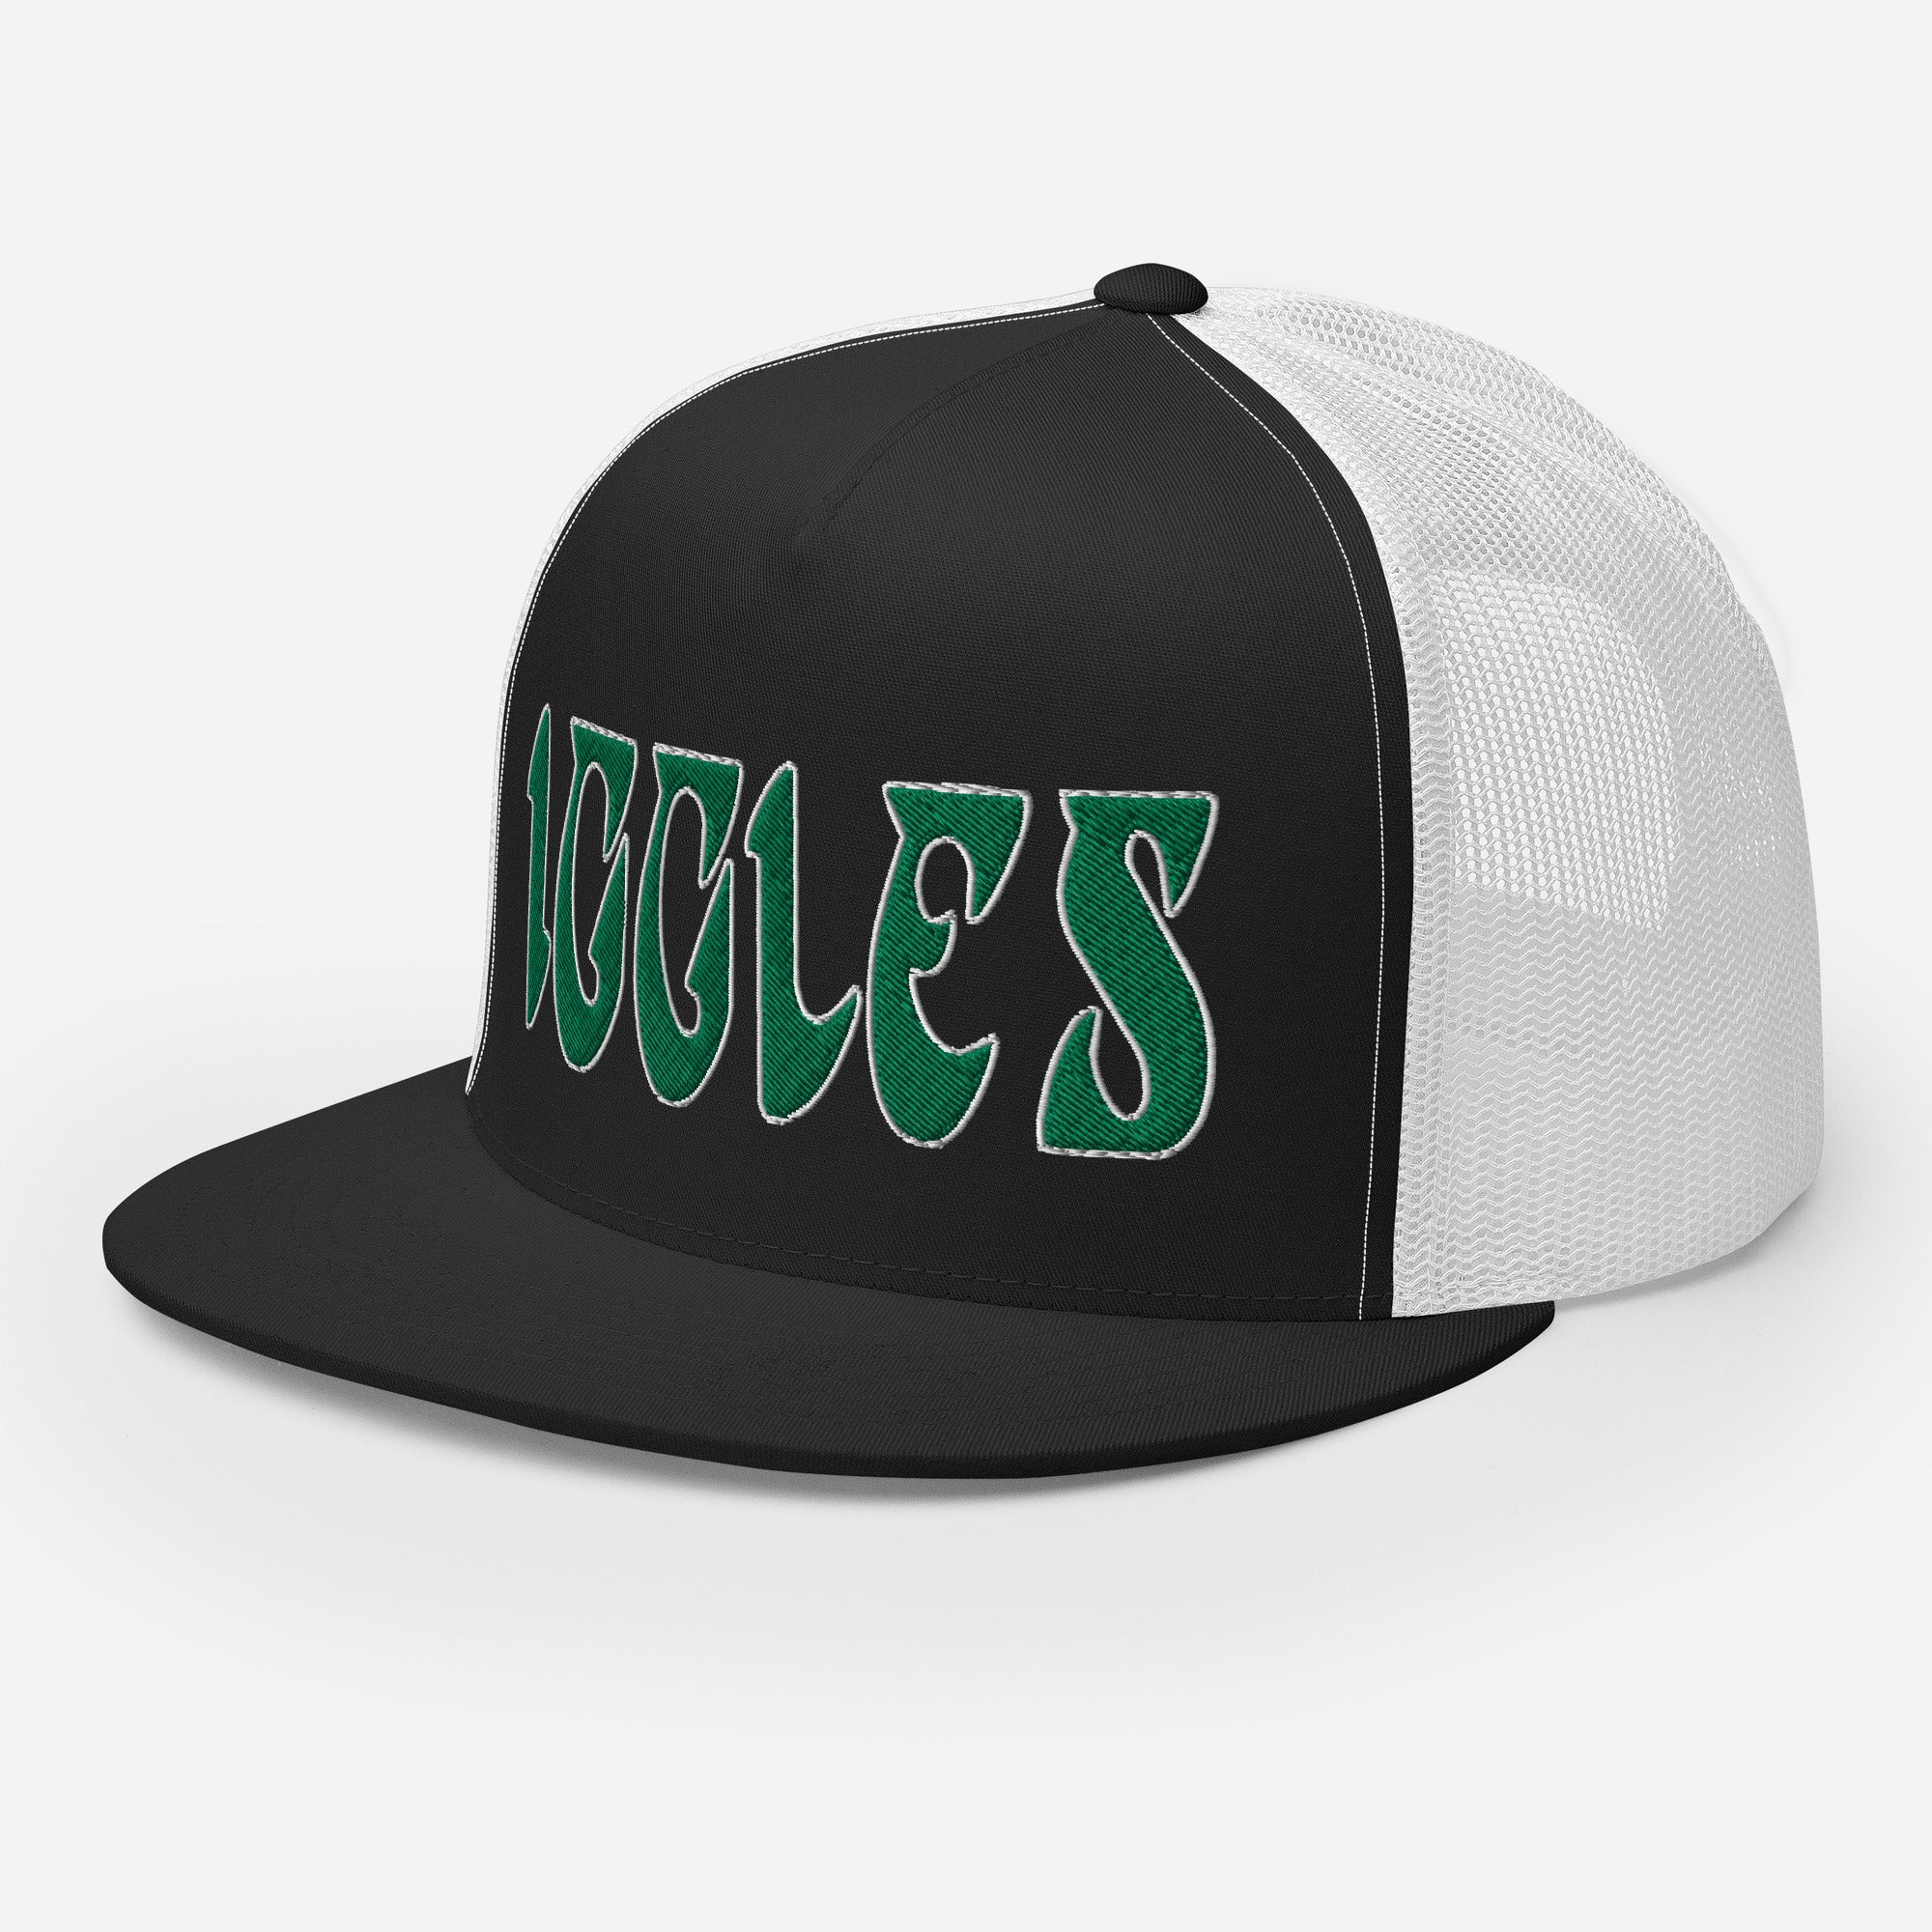 "Iggles" Trucker Hat